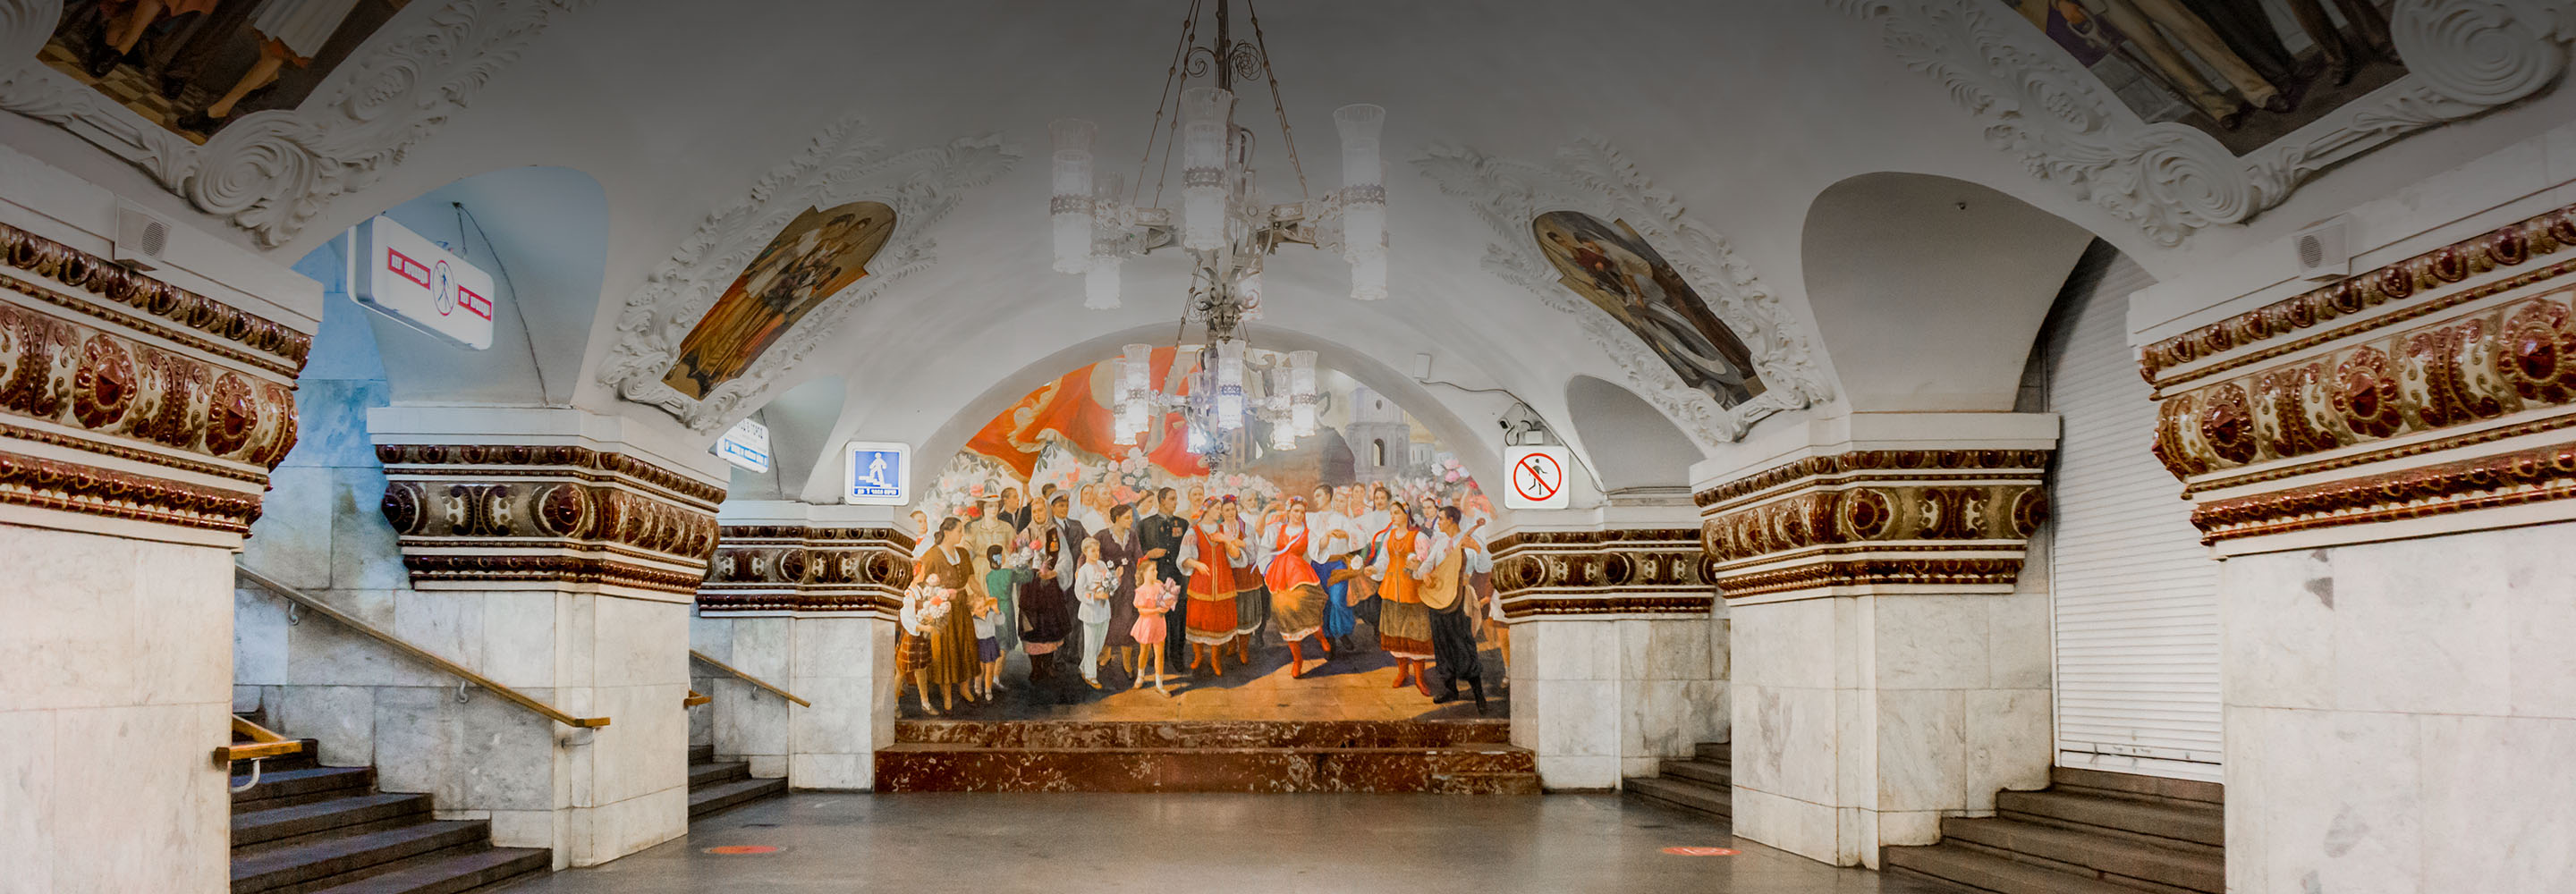 10 самых красивых станций метро Москвы